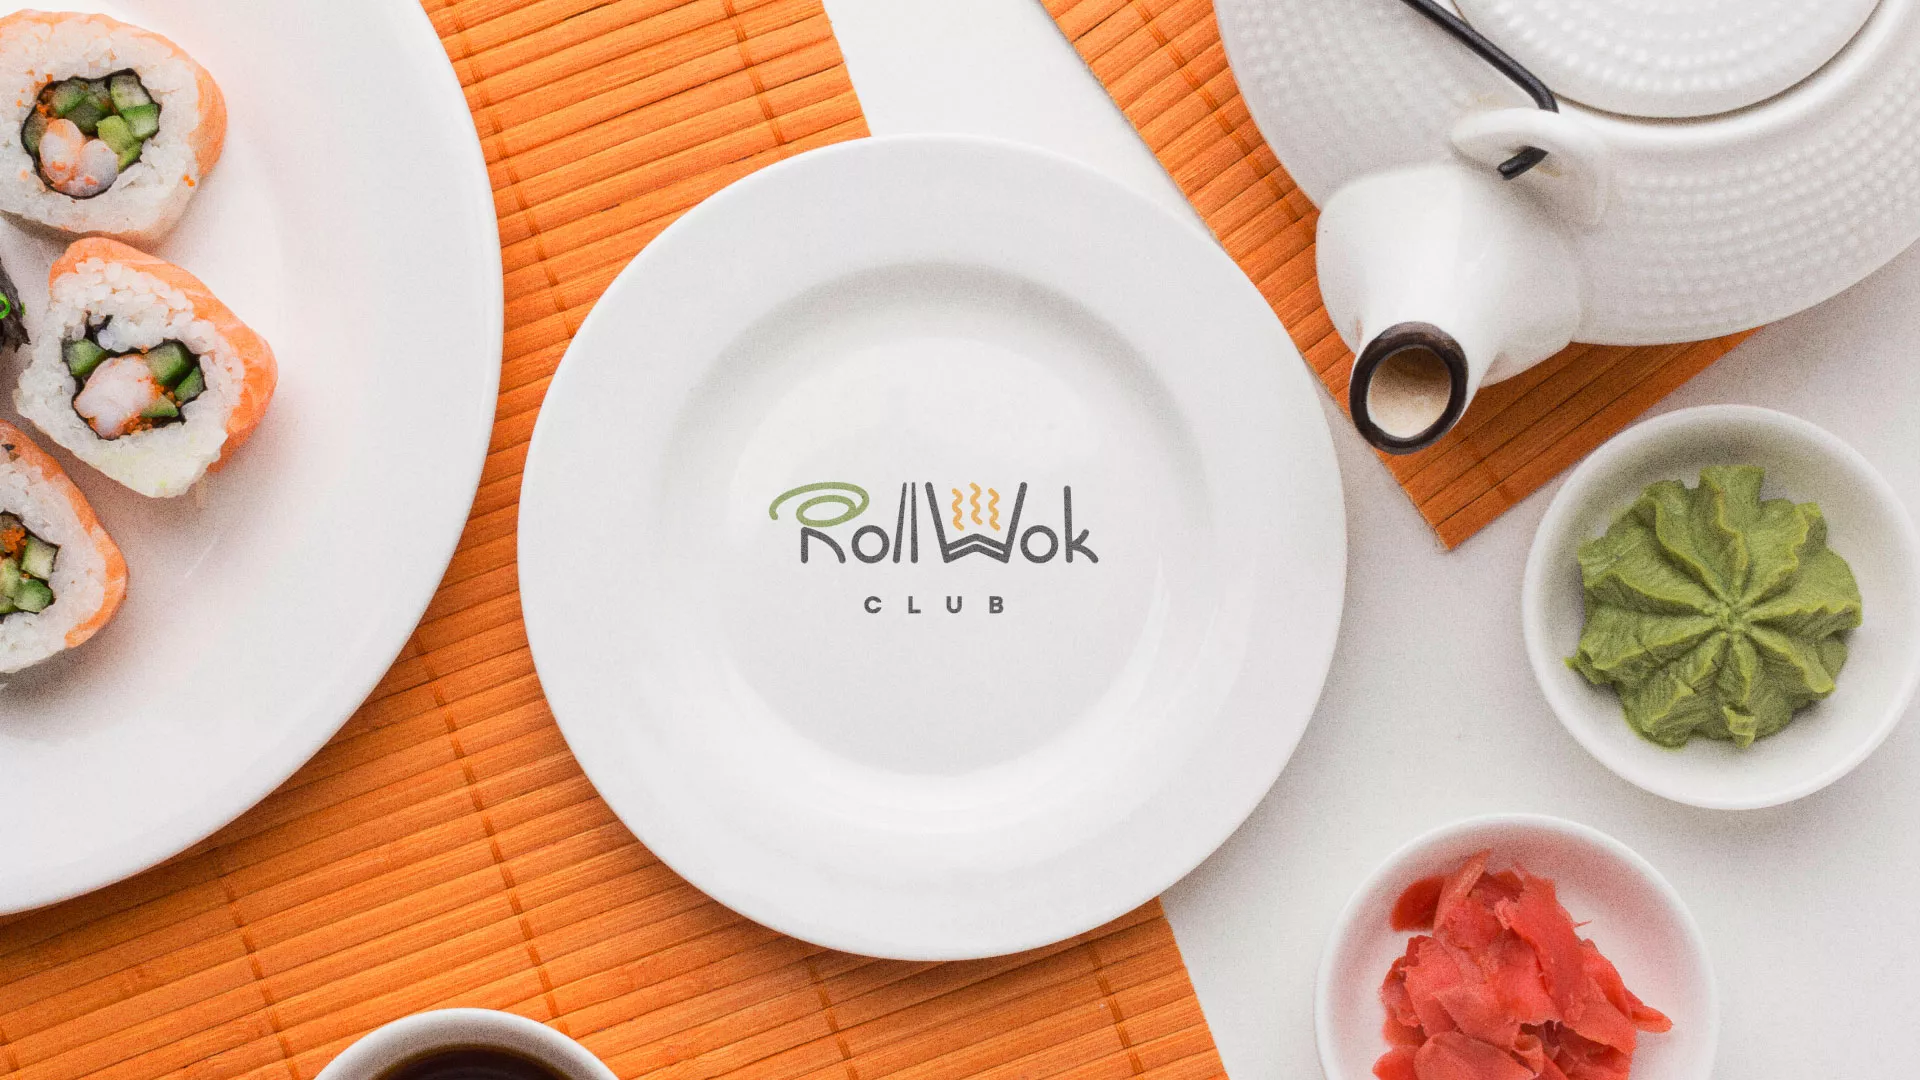 Разработка логотипа и фирменного стиля суши-бара «Roll Wok Club» в Великих Луках